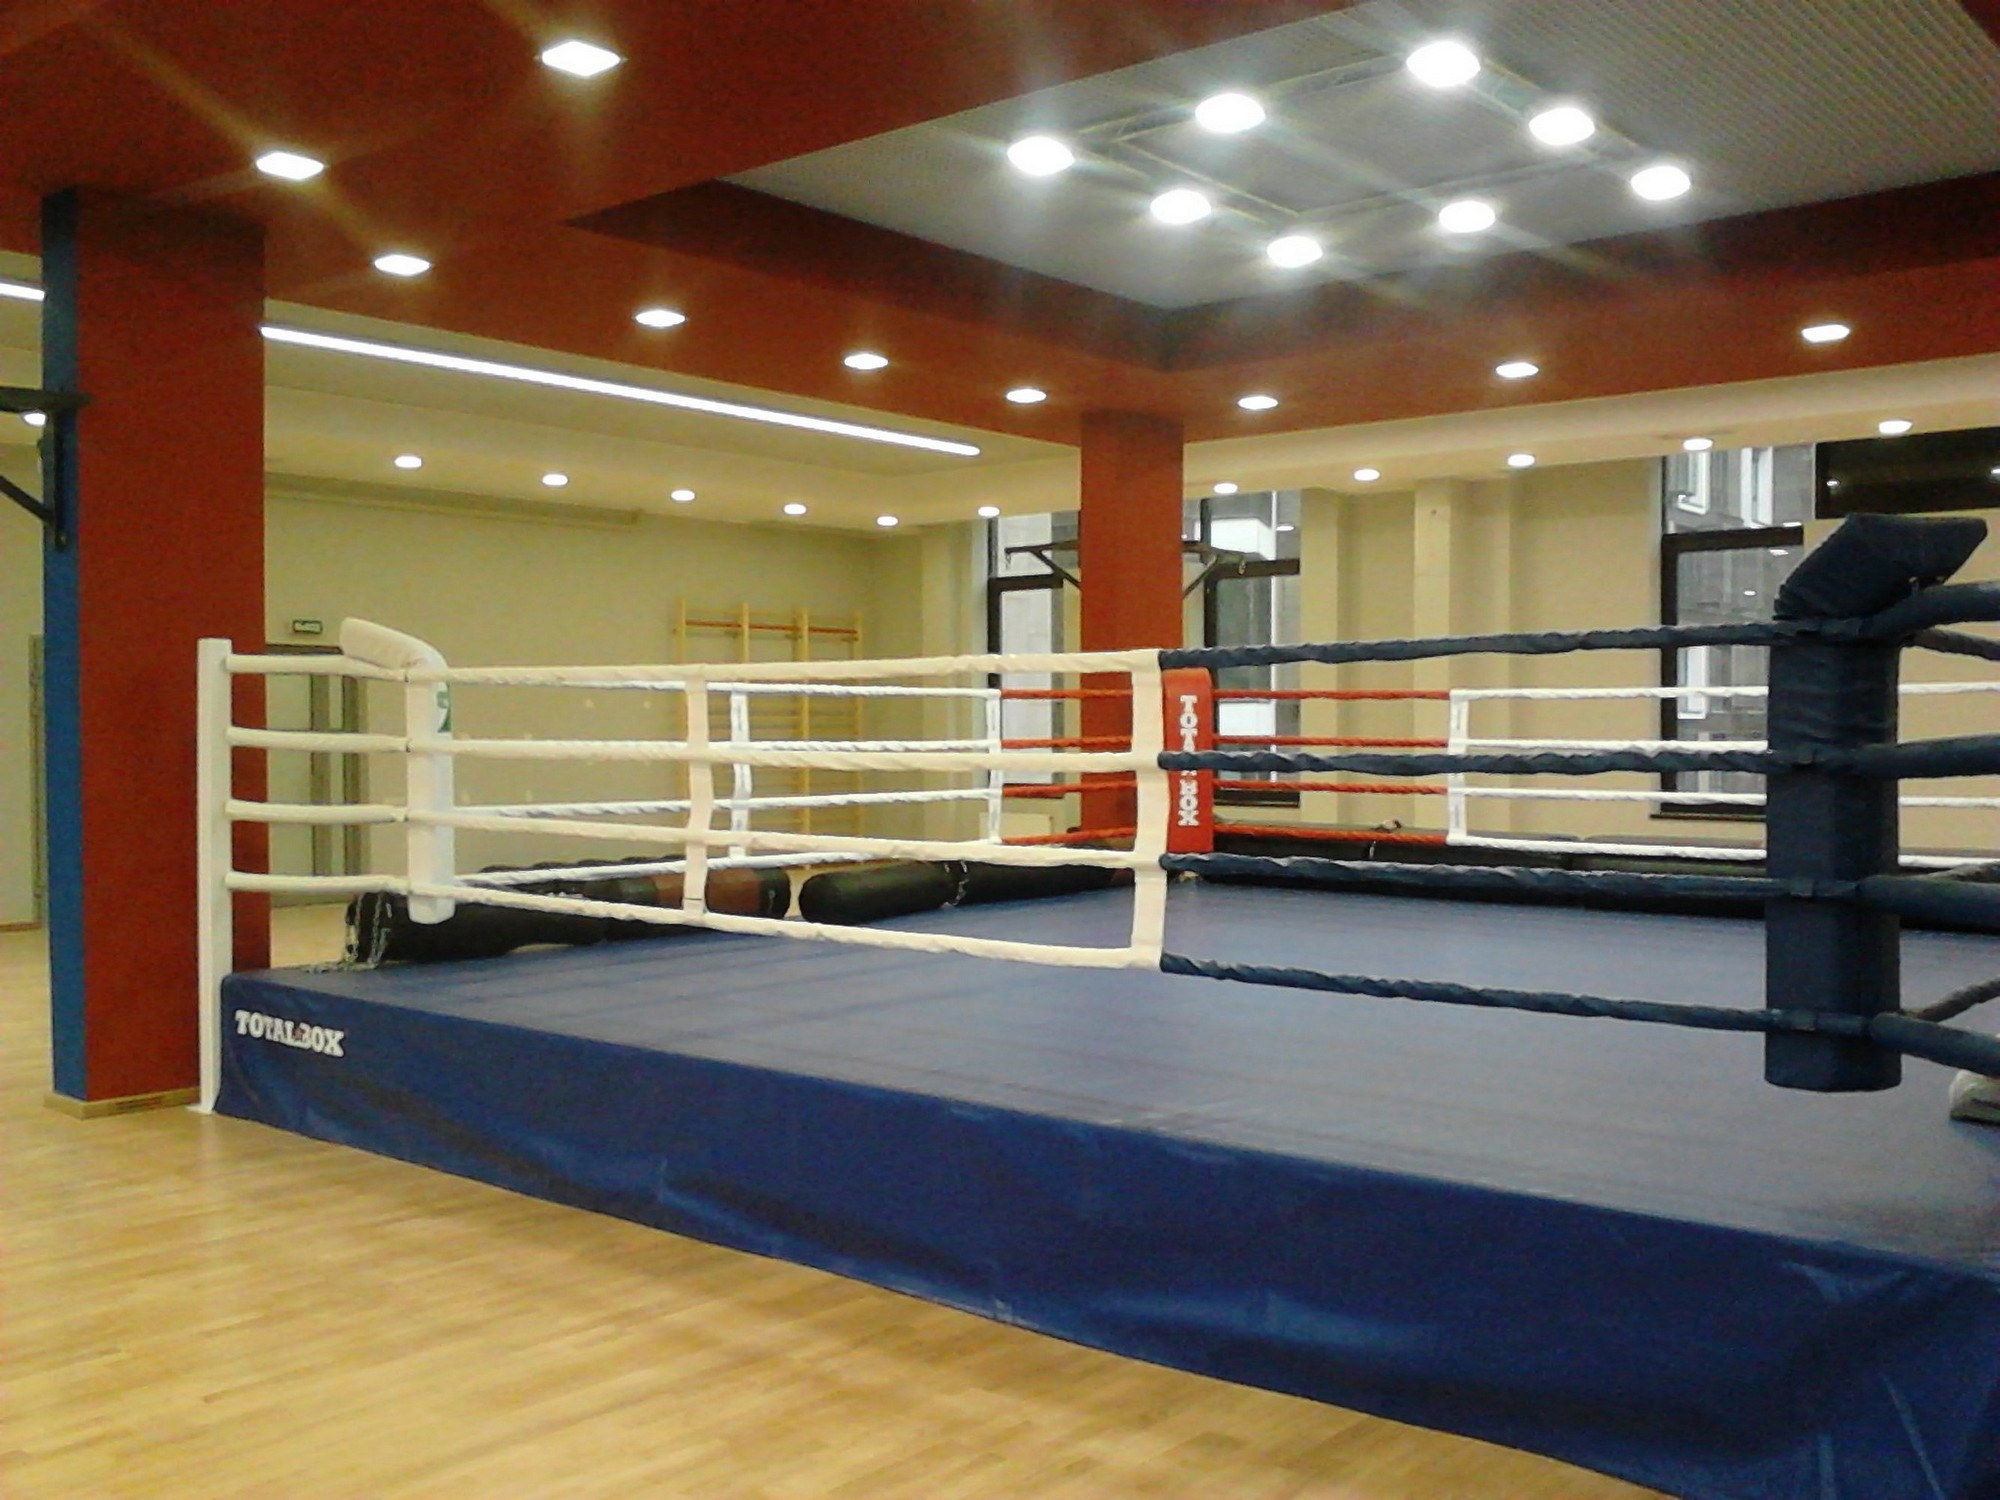 Боксерский ринг на помосте 0,5 м Totalbox размер по канатам 6×6 м РП 6-05 2000_1500